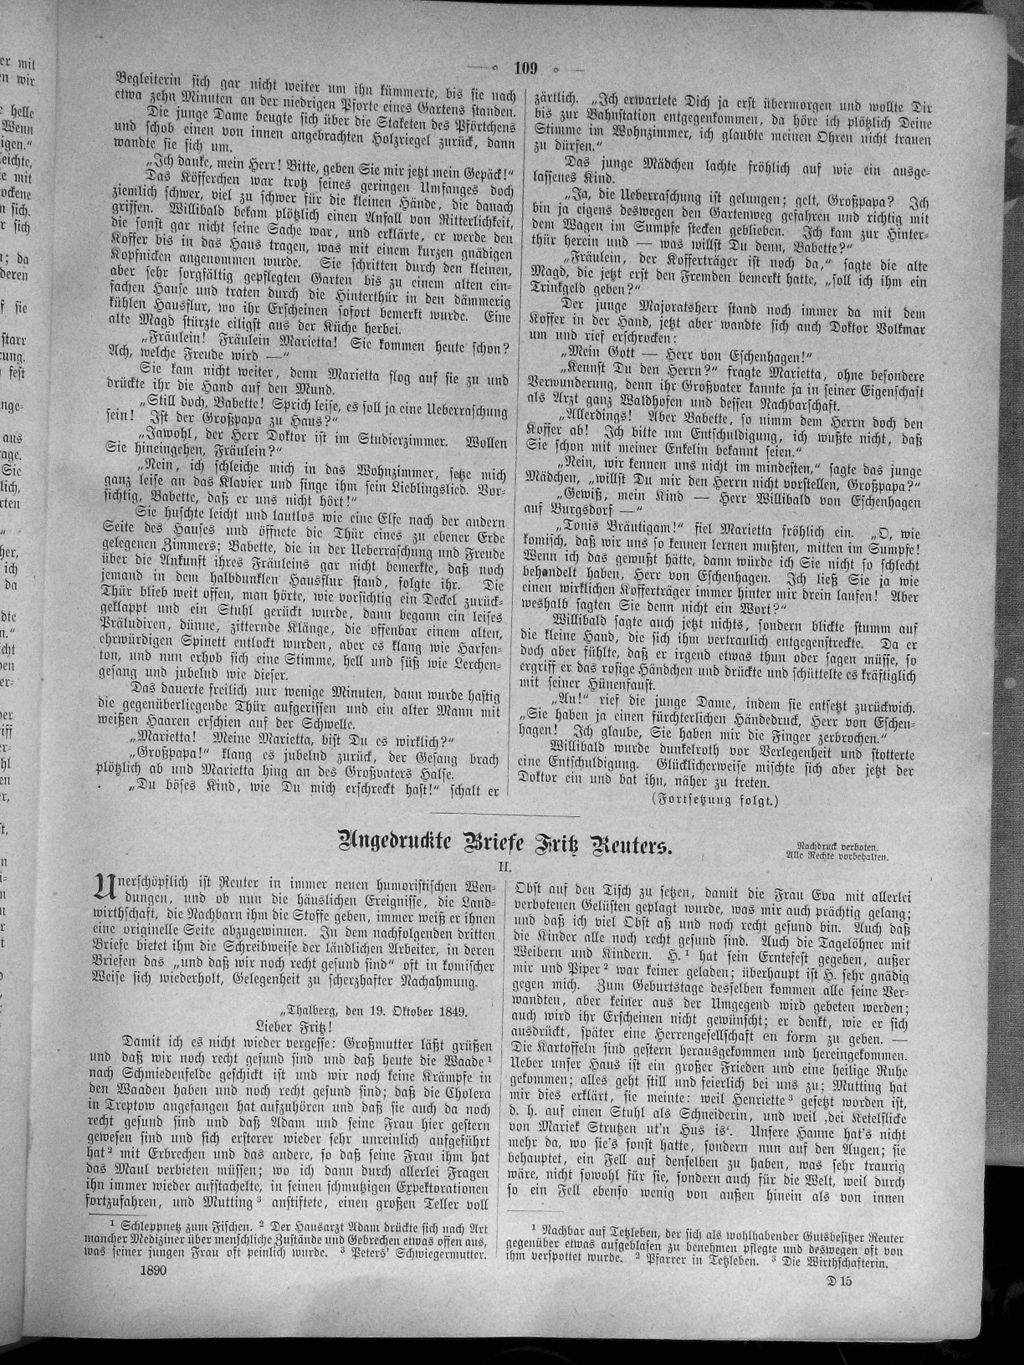 garten leipzig reizend seite gartenlaube 1890 109 wikisource of garten leipzig